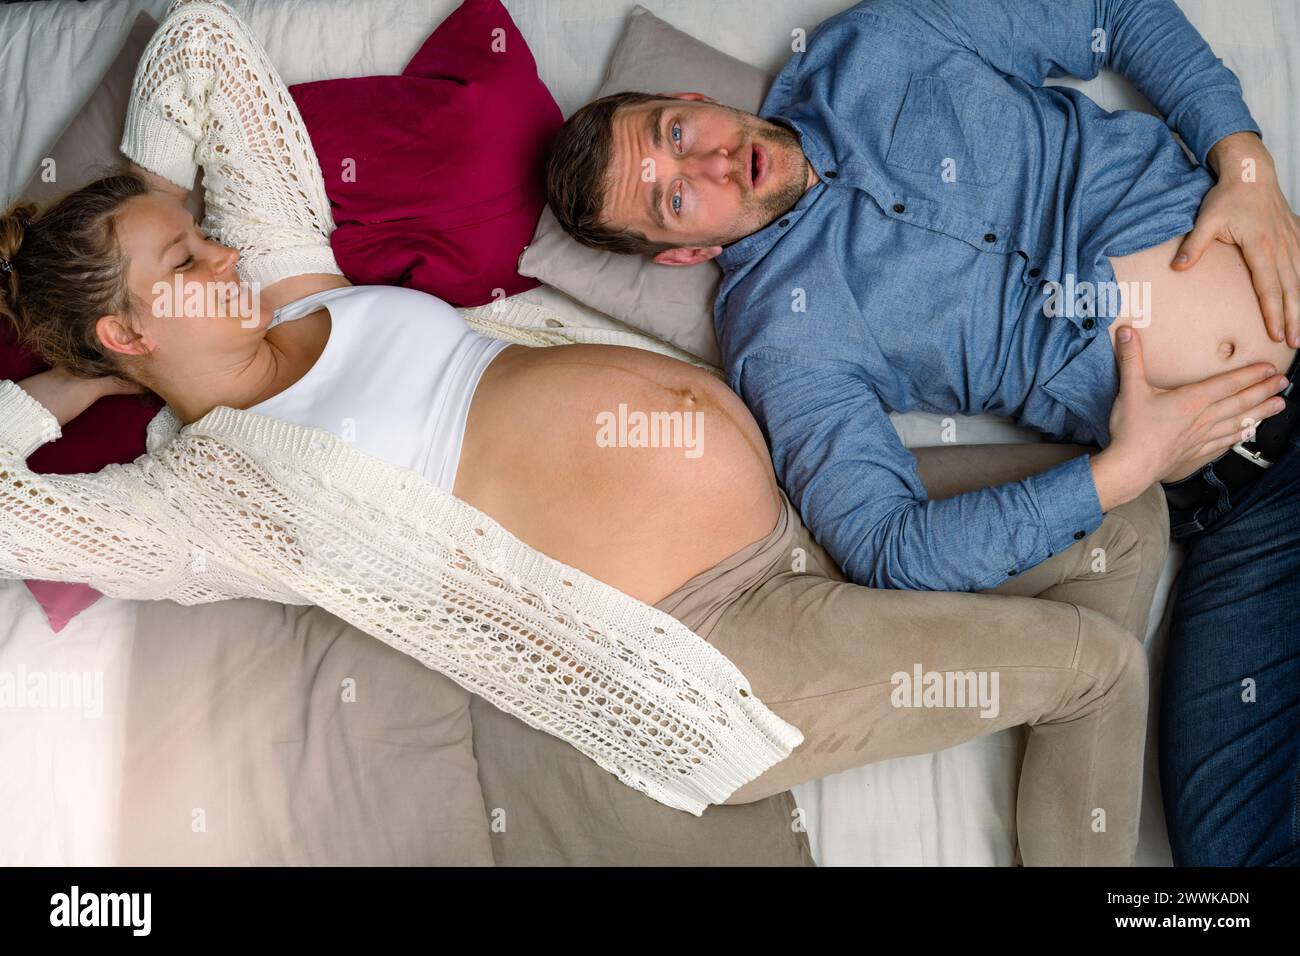 Description : les futurs parents sont allongés sur le canapé et le père coprégnant tient son estomac. Prise de vue brillante. Banque D'Images